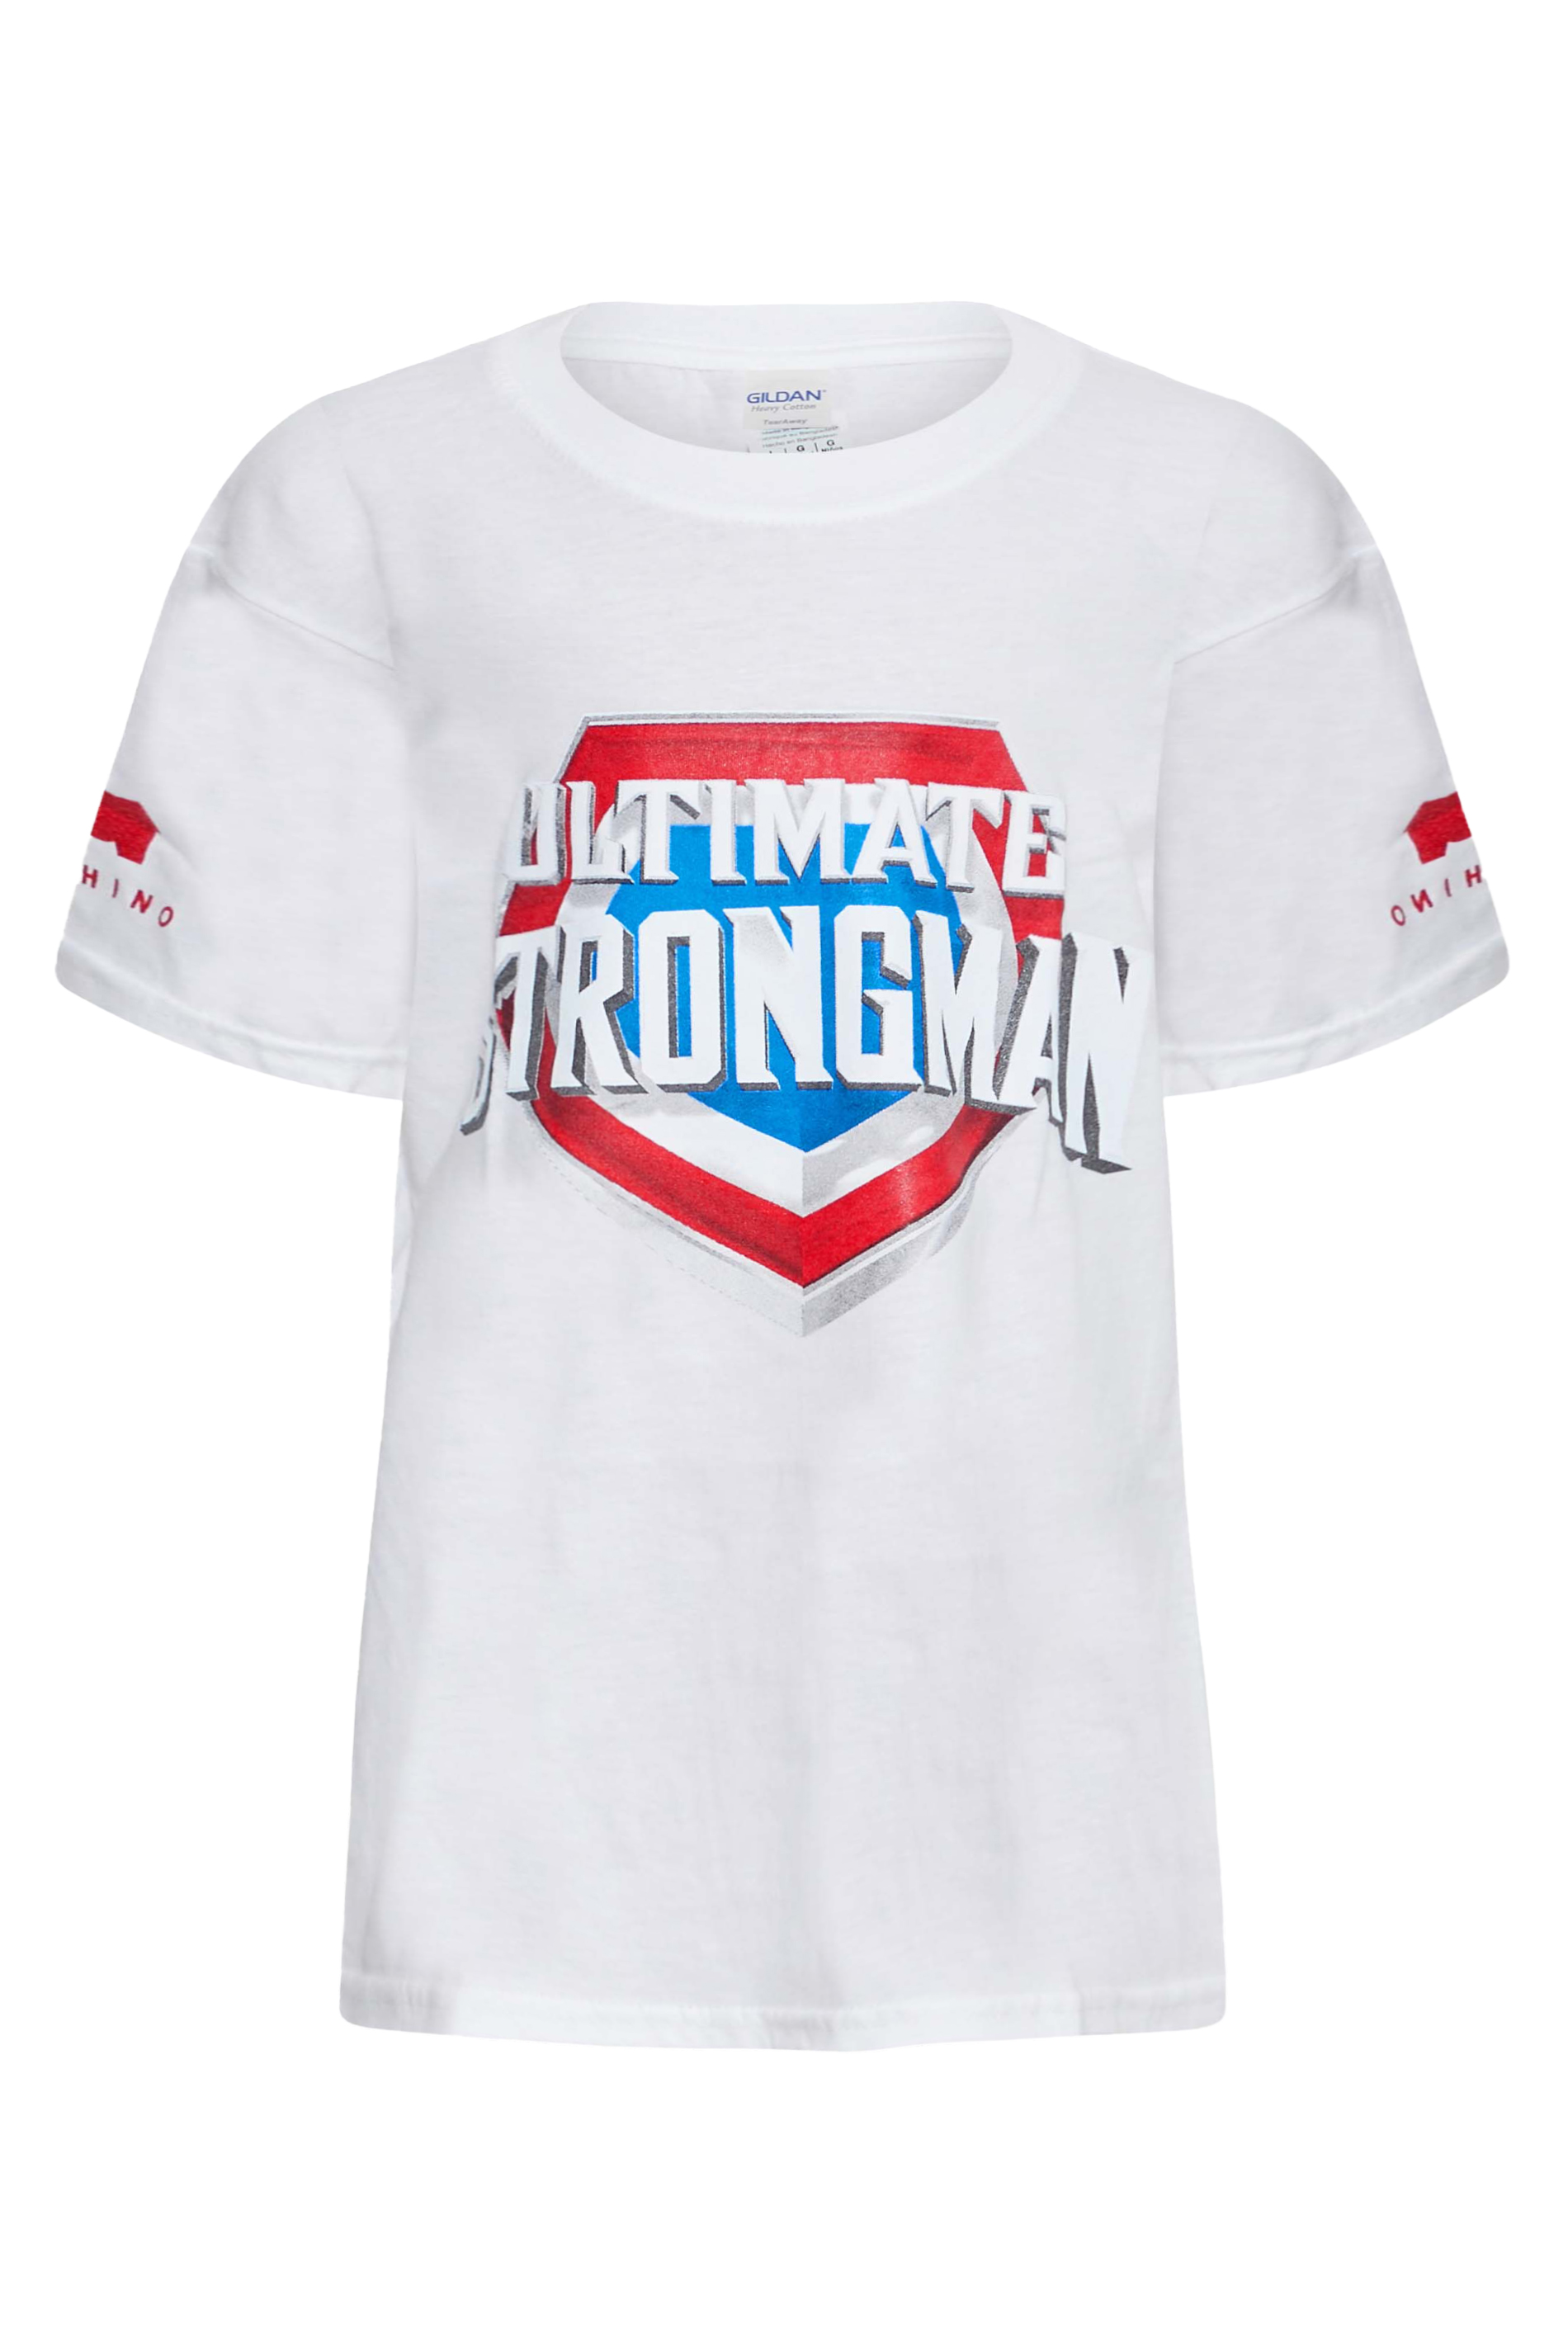 BadRhino Girls White Ultimate Strongman T-Shirt | BadRhino 1